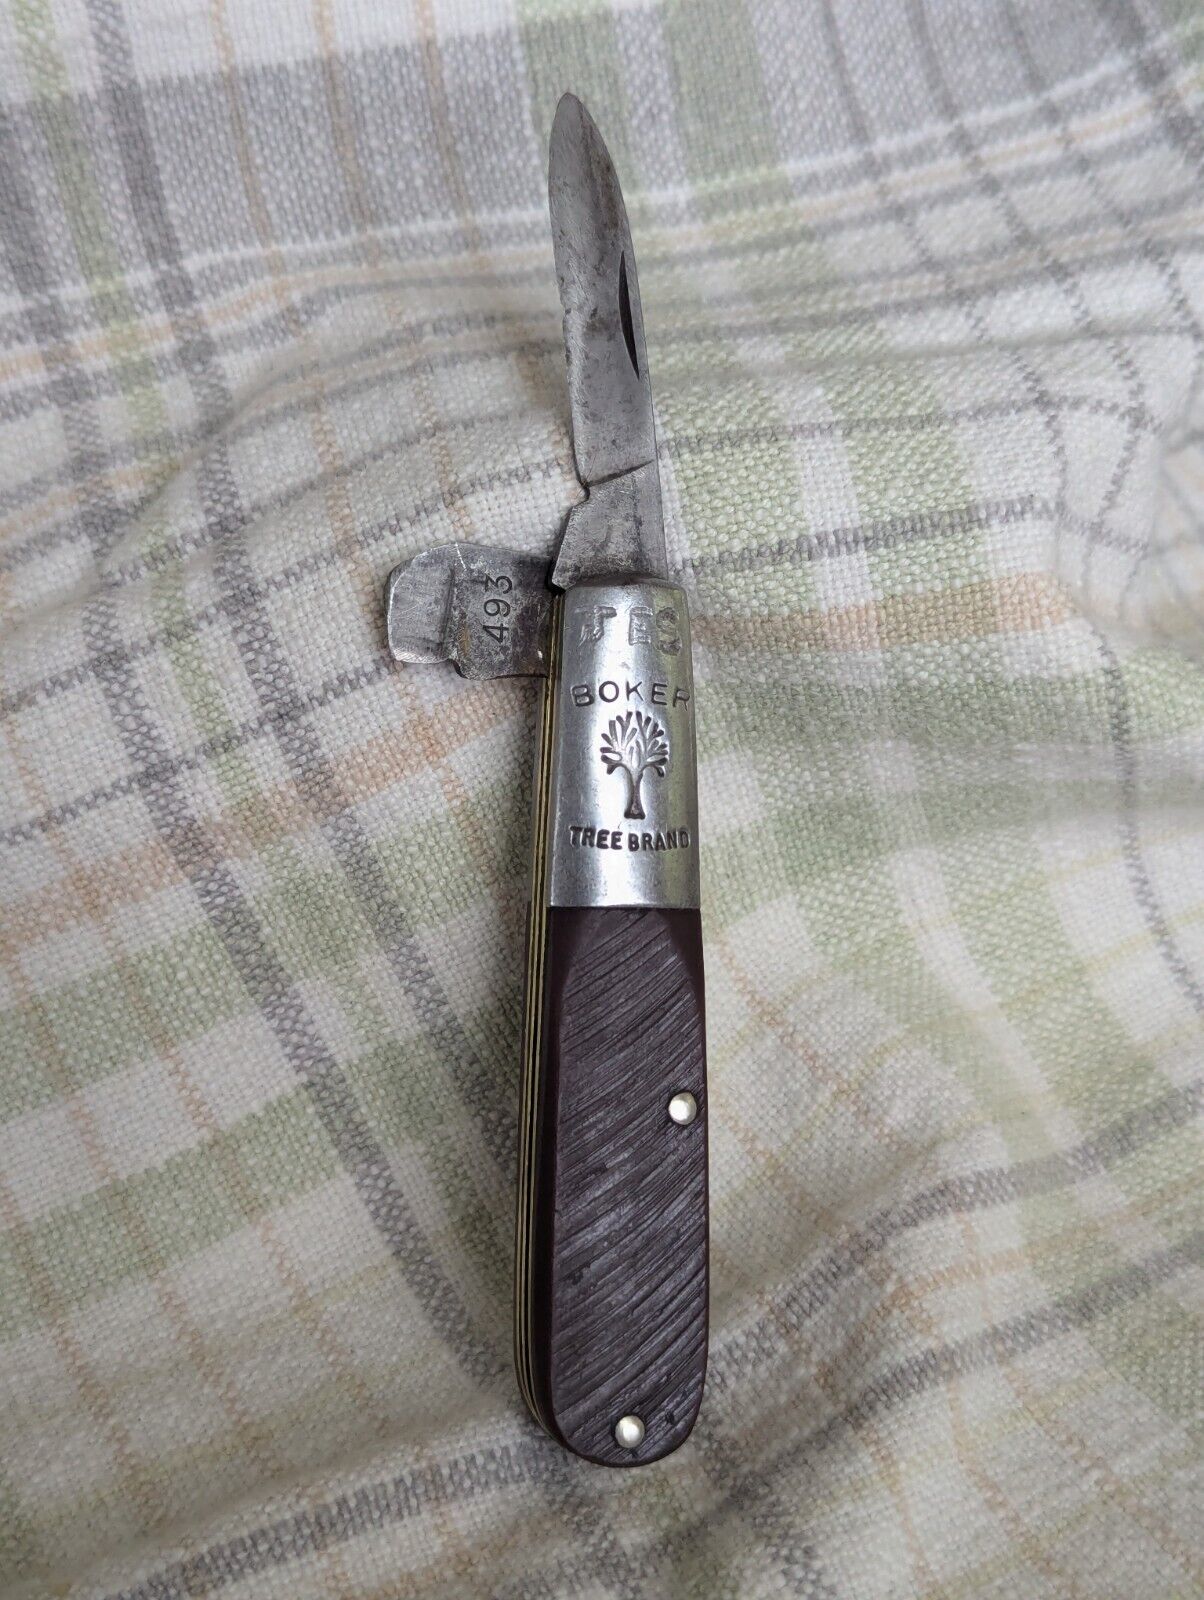 BOKER TREE BRAND # 493 VINTAGE Sawcut Derlin BARLOW Style Pocket Knife (1 Blade)